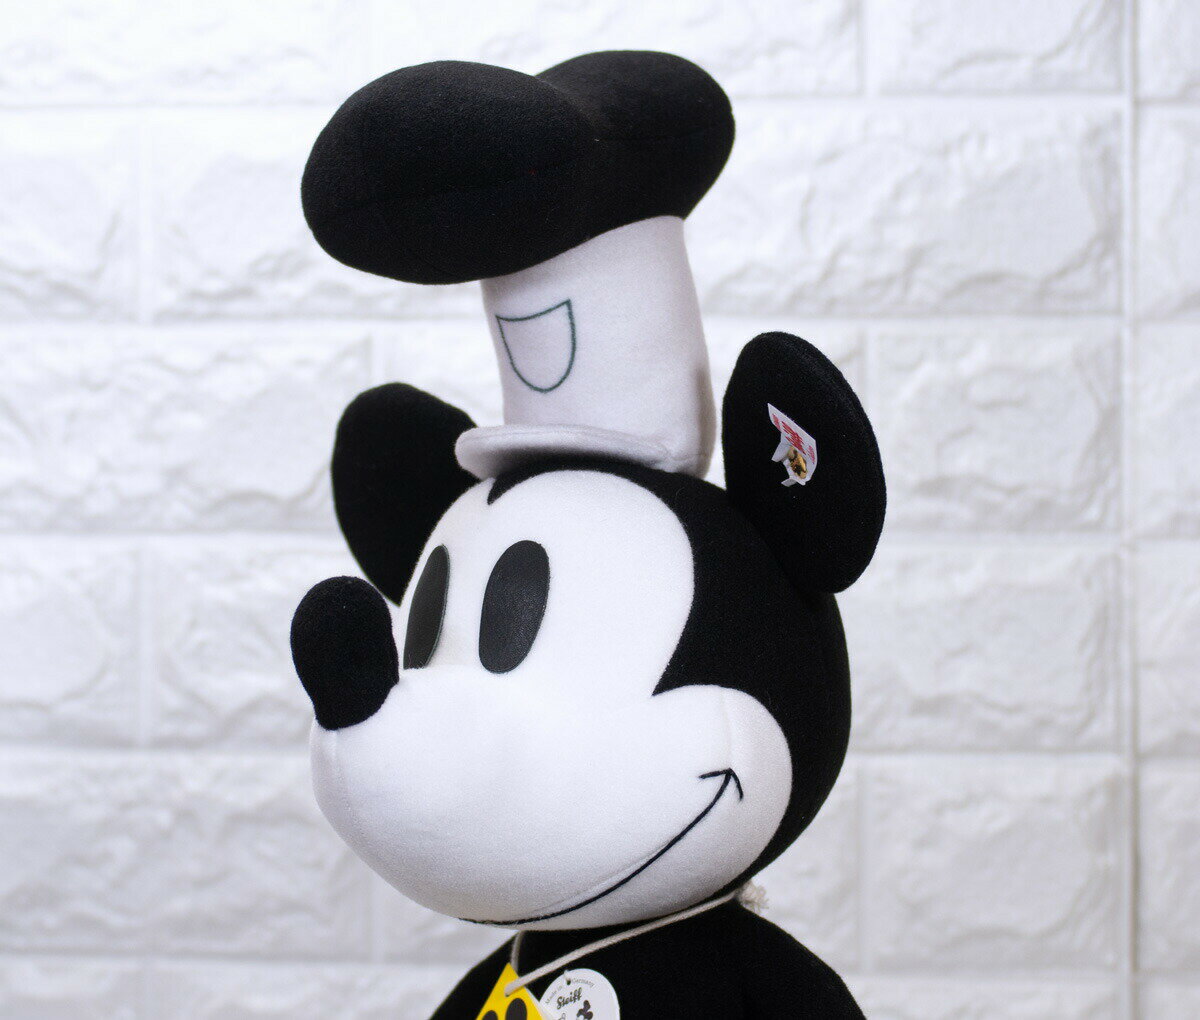 シュタイフ テディベア Steiff ミッキーマウス誕生90周年蒸気船ウィリーミッキーマウス 35cm Disney Mickey Mouse Steamboat Willie 世界限定